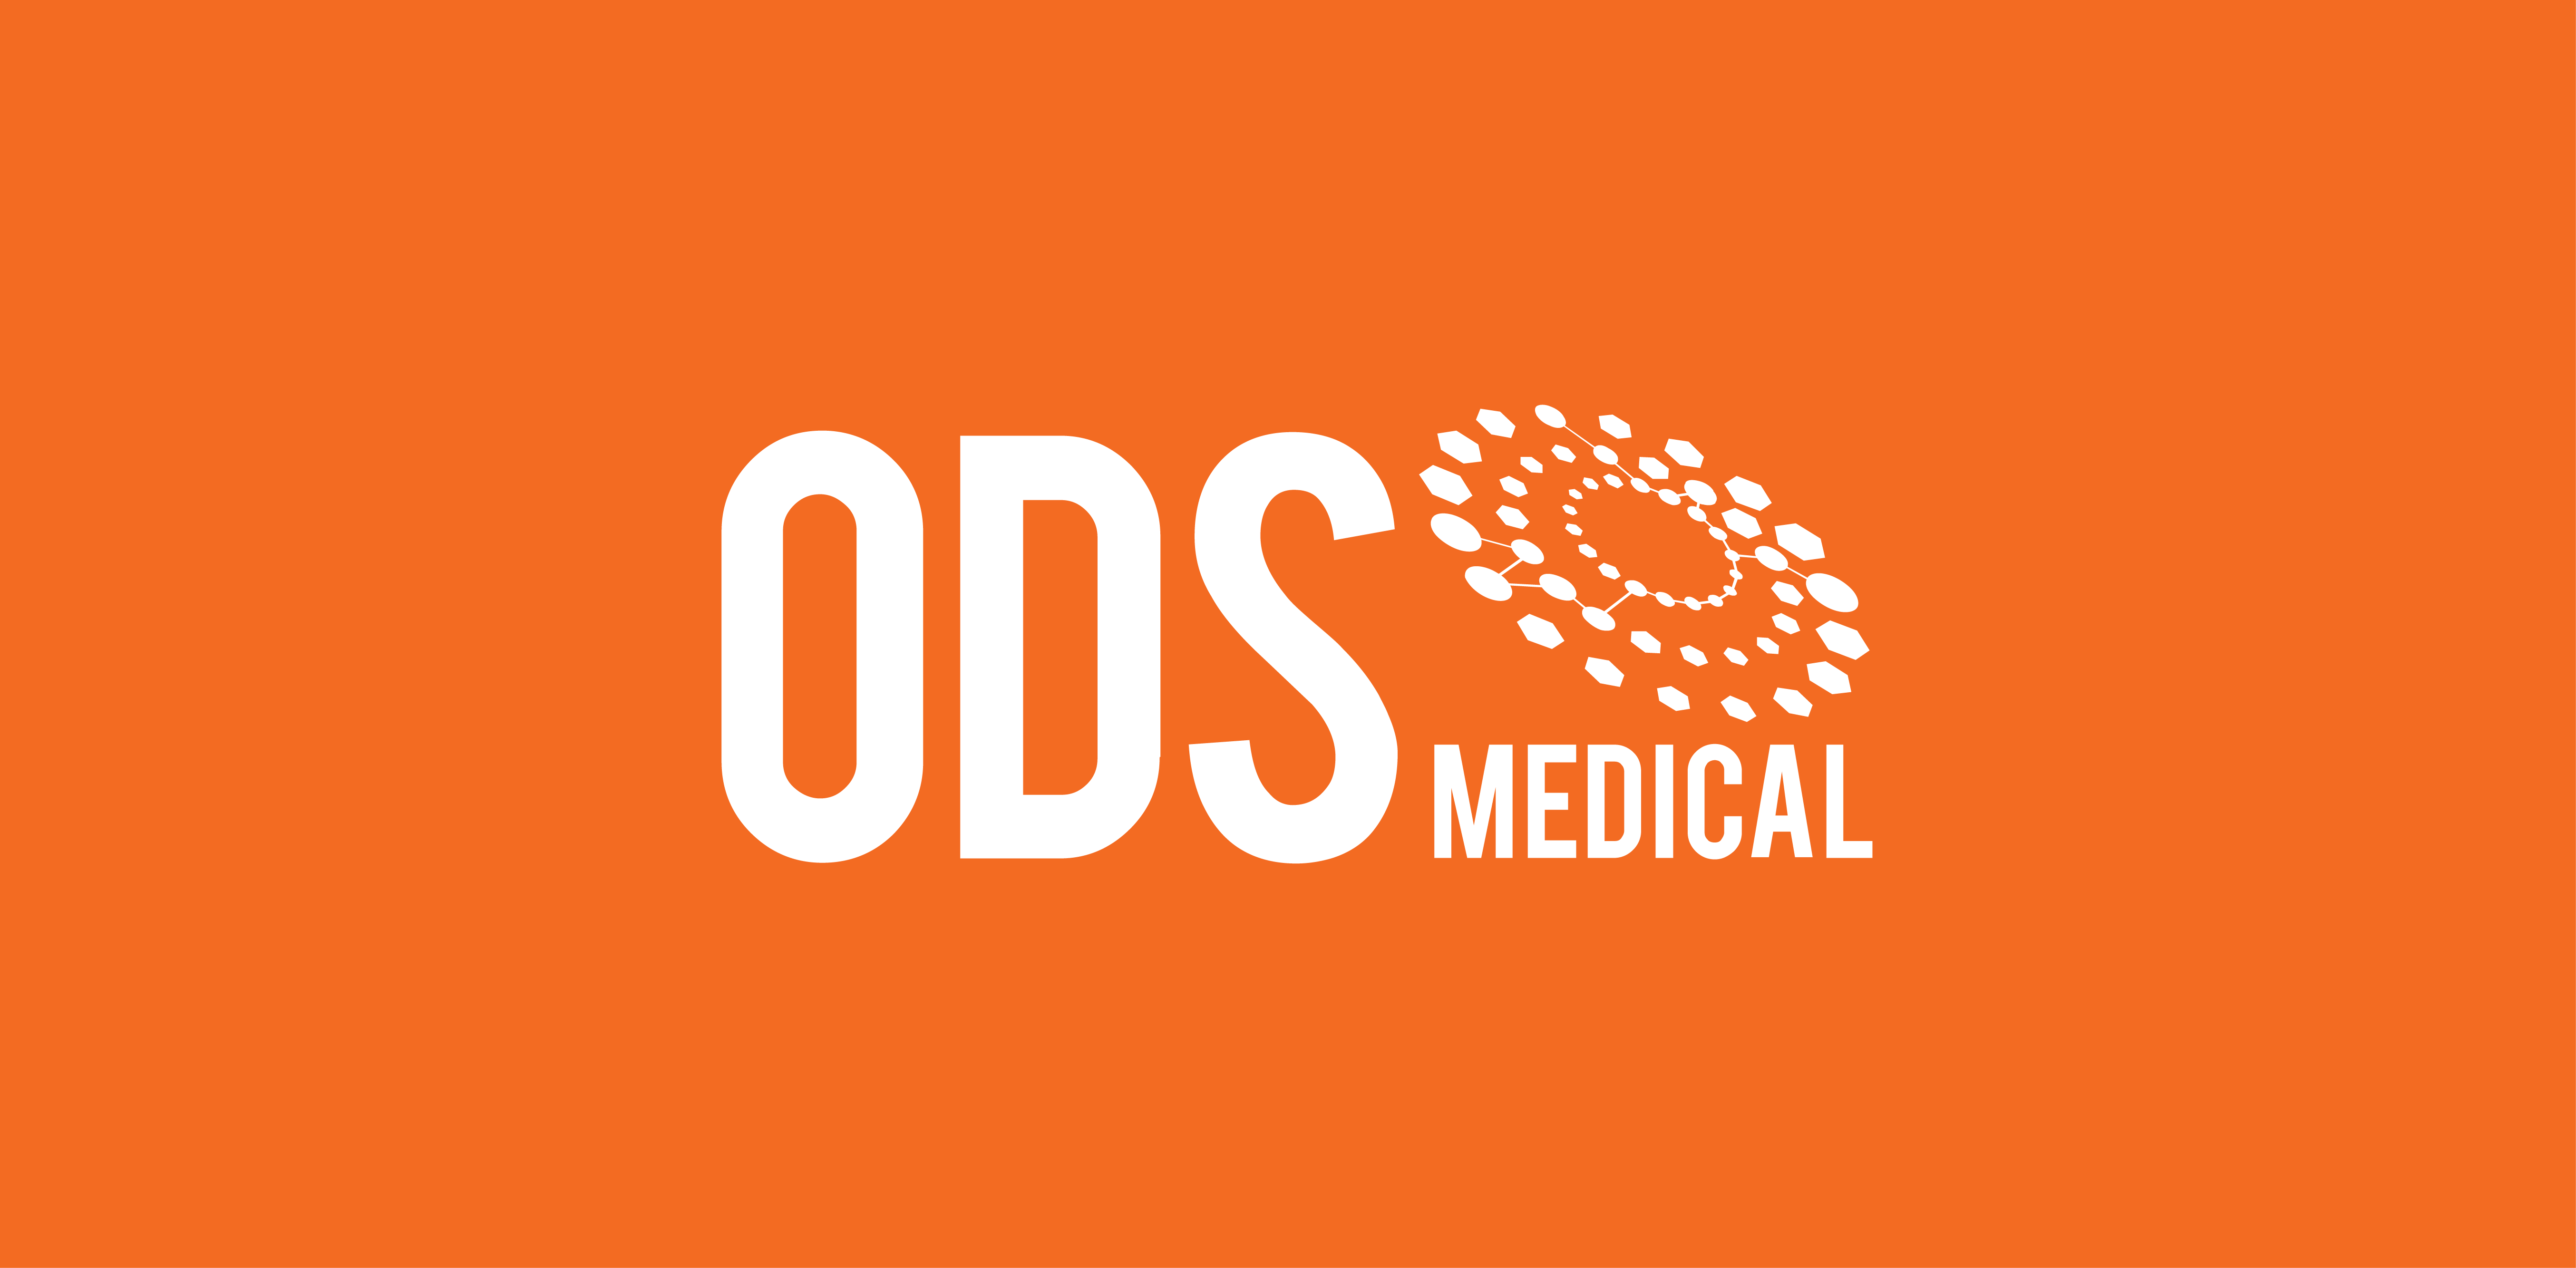 ODS_Medical_Fond_orange